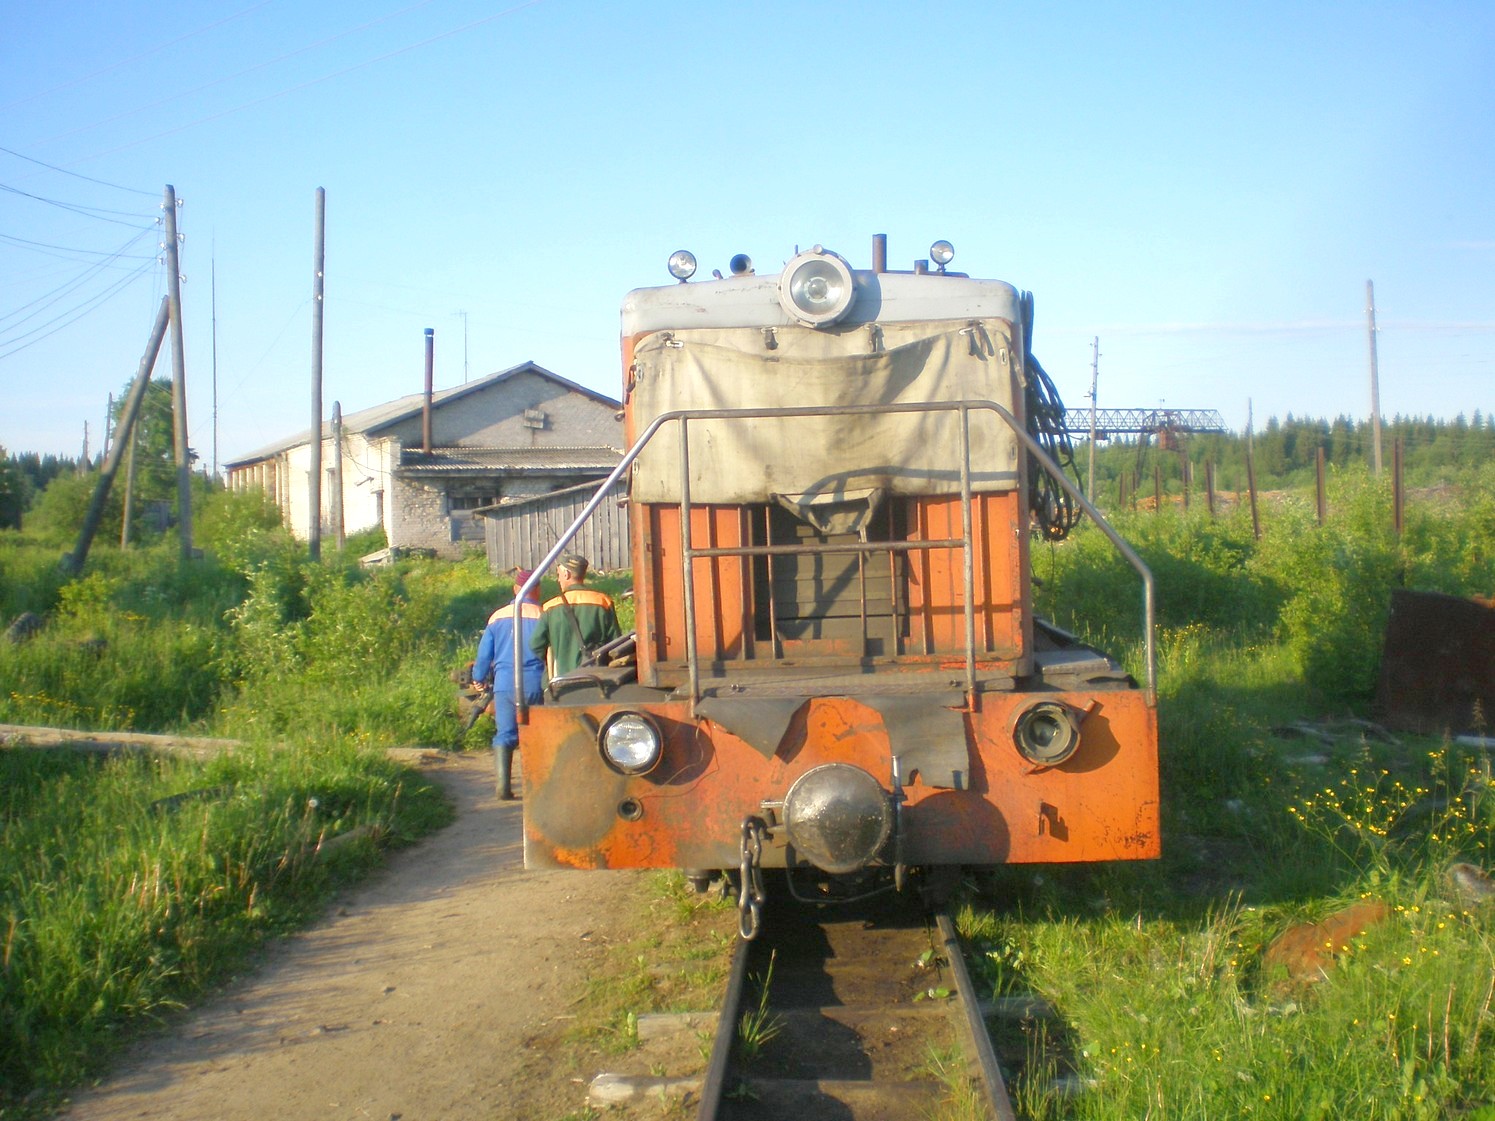 Ивакшанская узкоколейная железная дорога — фотографии, сделанные в 2009 году (часть 1)